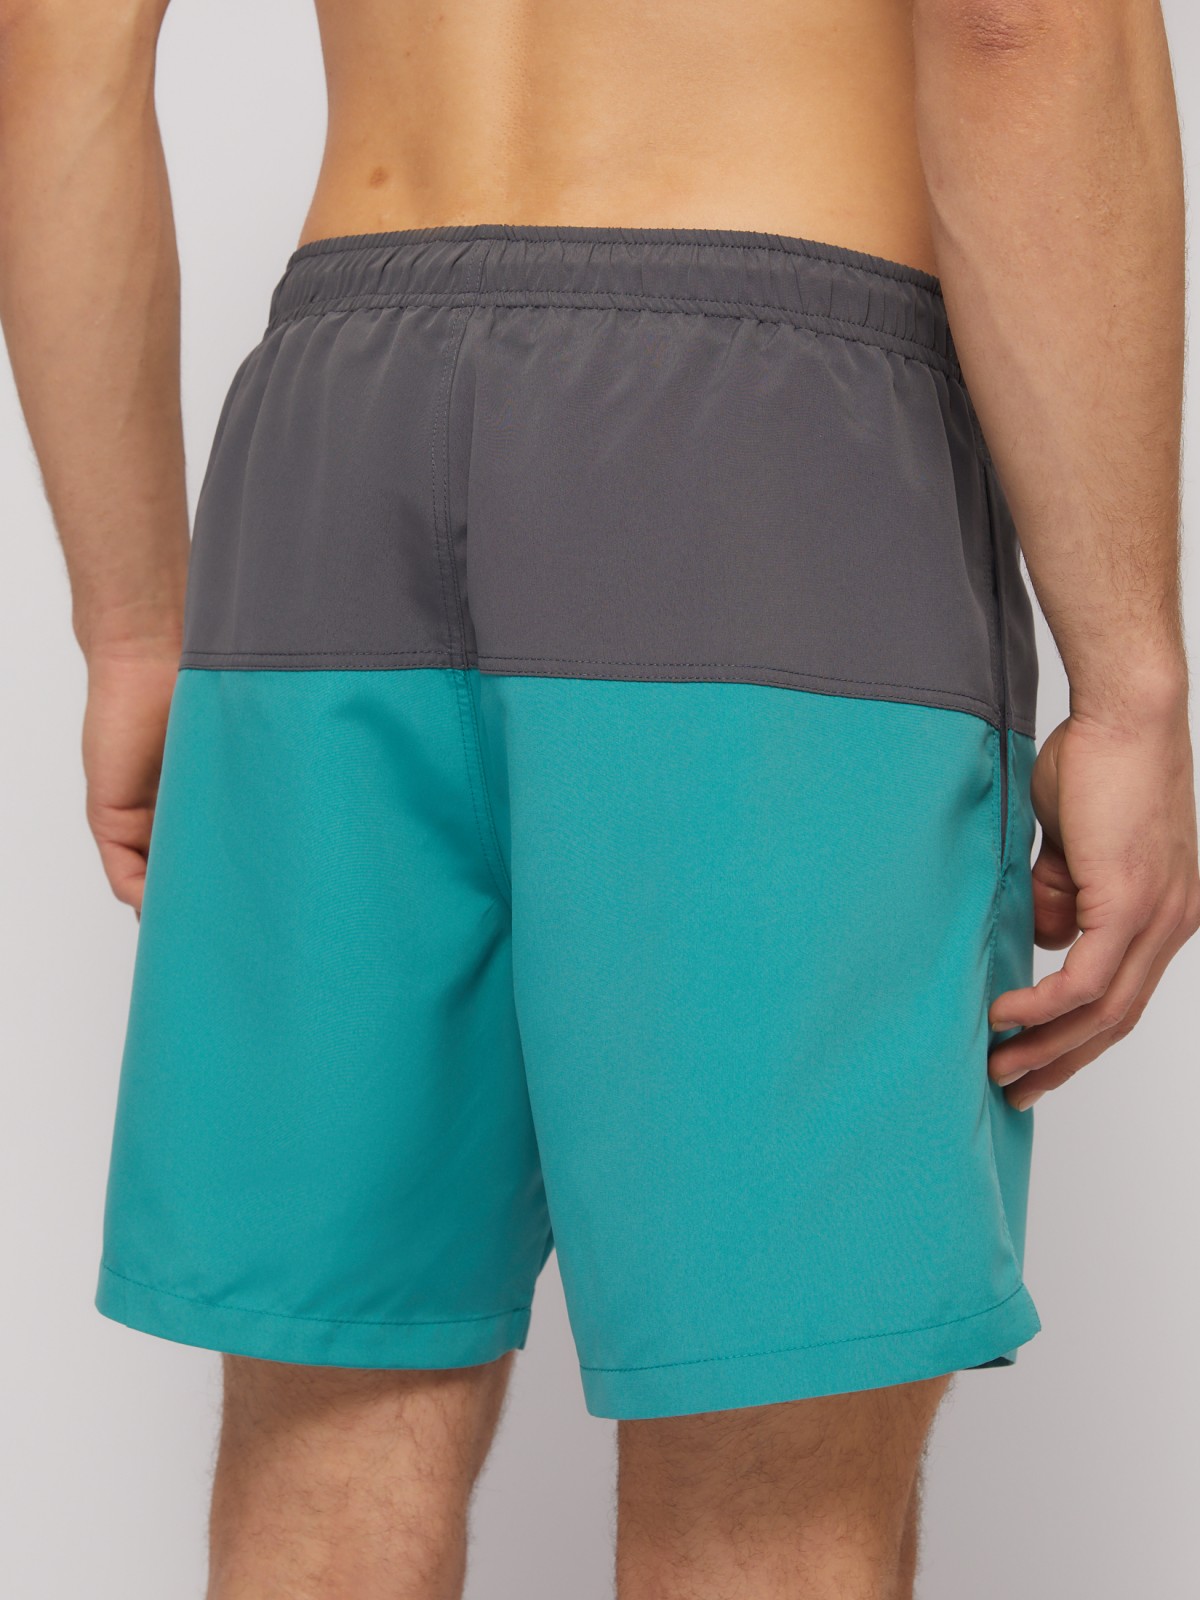 Пляжные шорты (для плавания) zolla N14247S39023, цвет бирюзовый, размер XS - фото 4